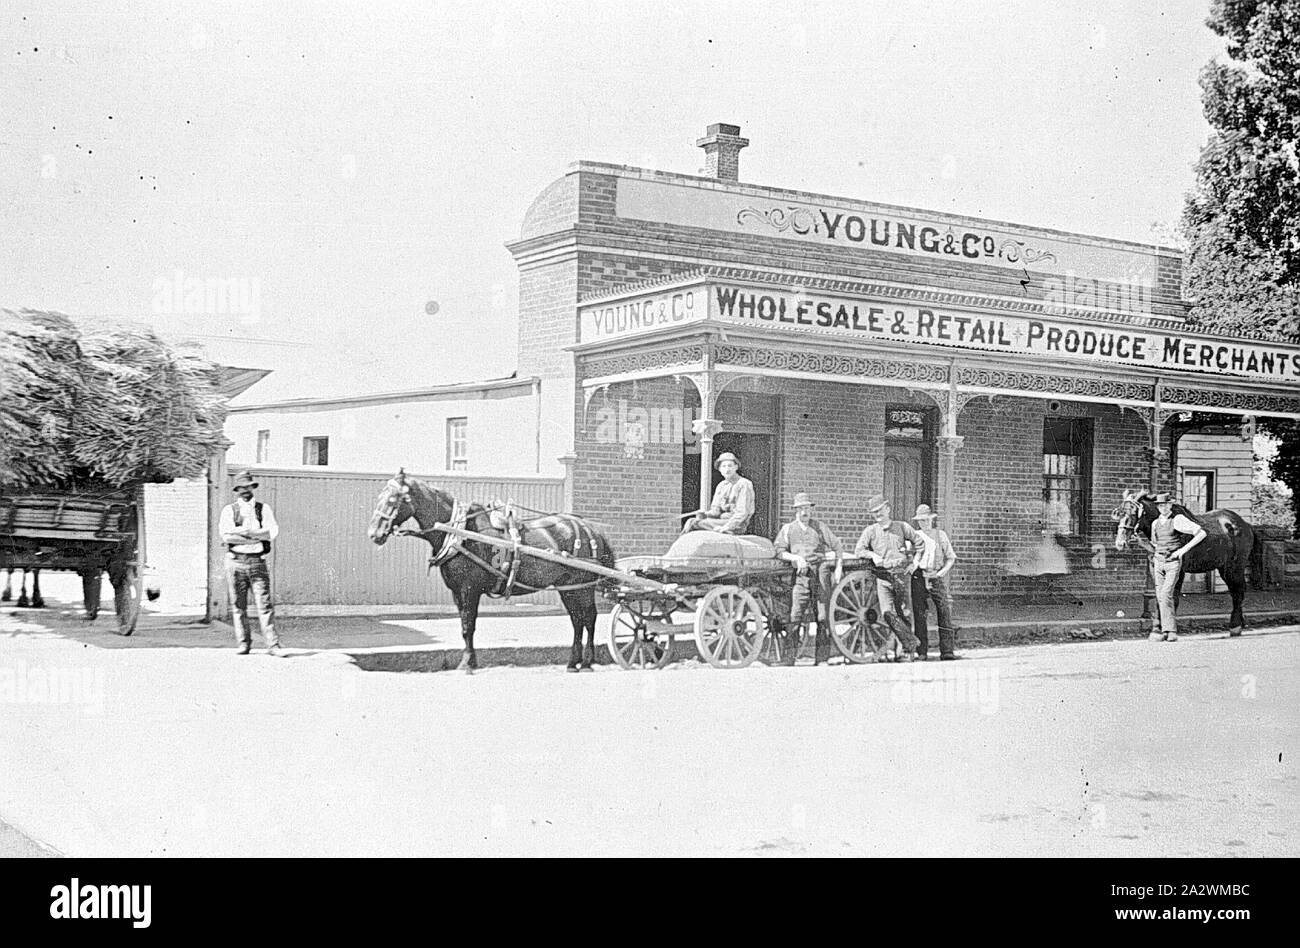 Negativo - Carri caricati al di fuori di giovani & Company, Ballarat East, Victoria, circa 1905, Carri caricati al di fuori di giovani & Company, commercio all'ingrosso e vendita al dettaglio di produrre i commercianti Foto Stock